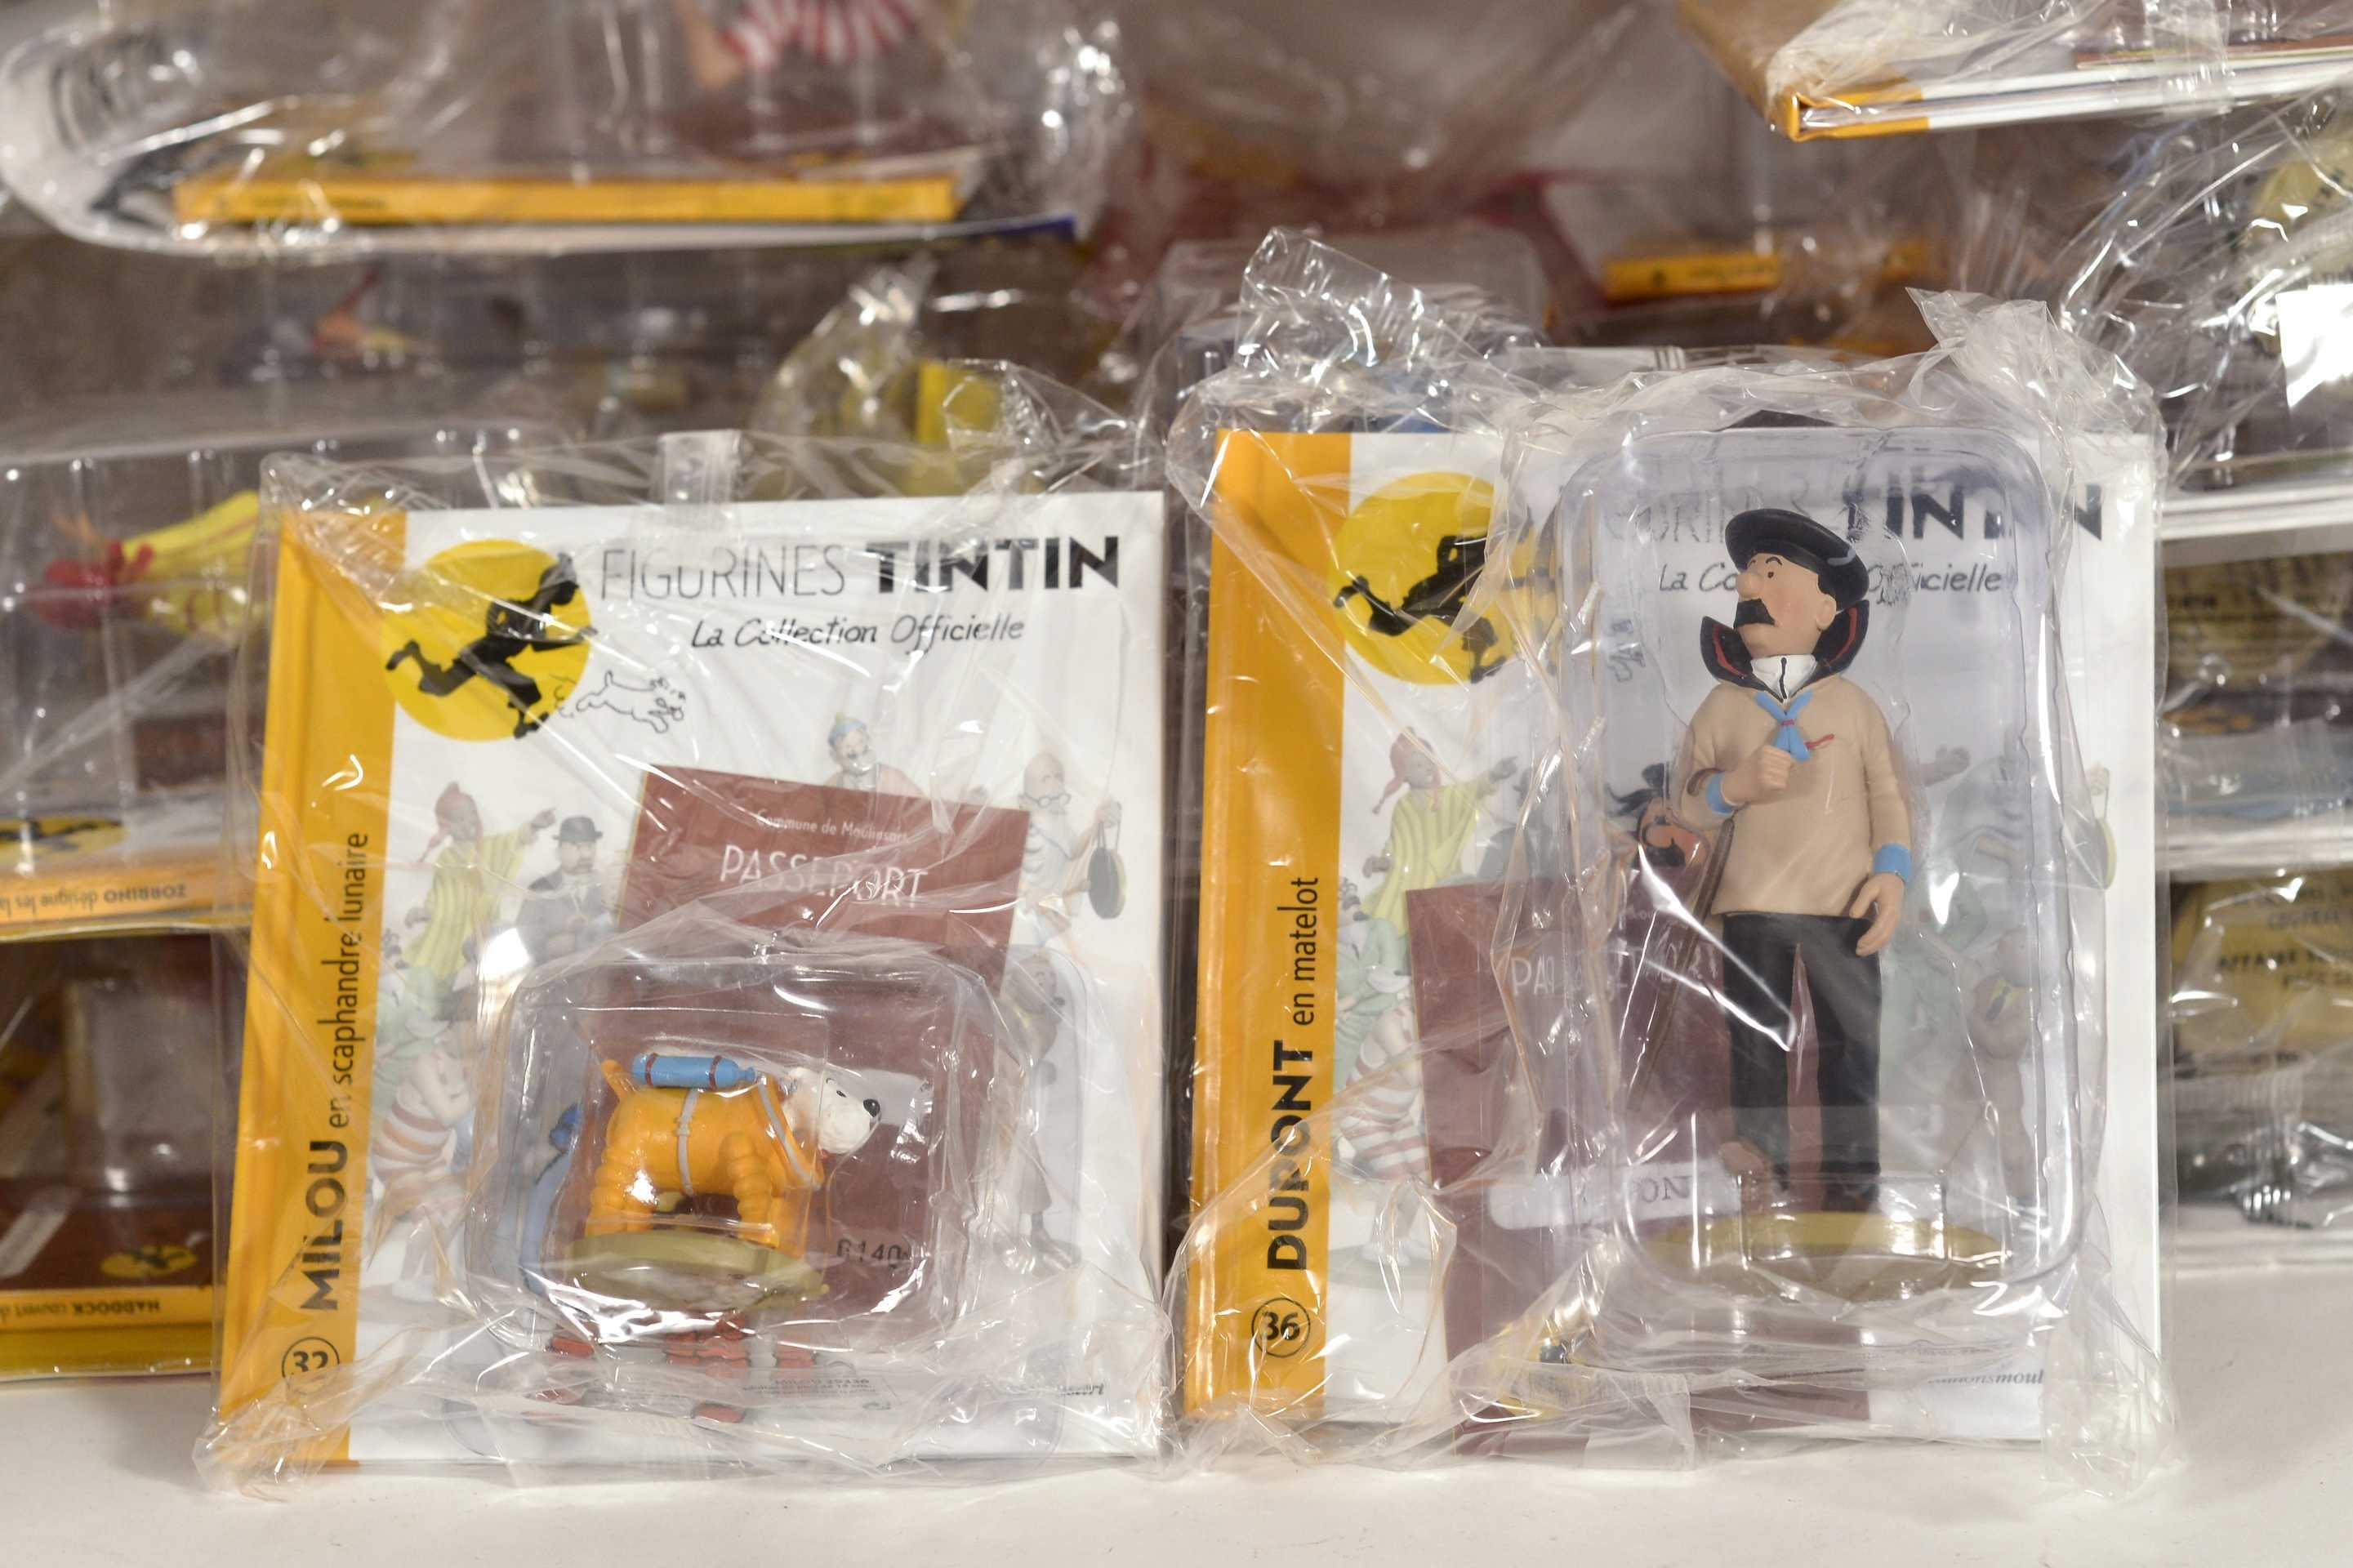 La première collection officielle de figurines Tintin - Festival